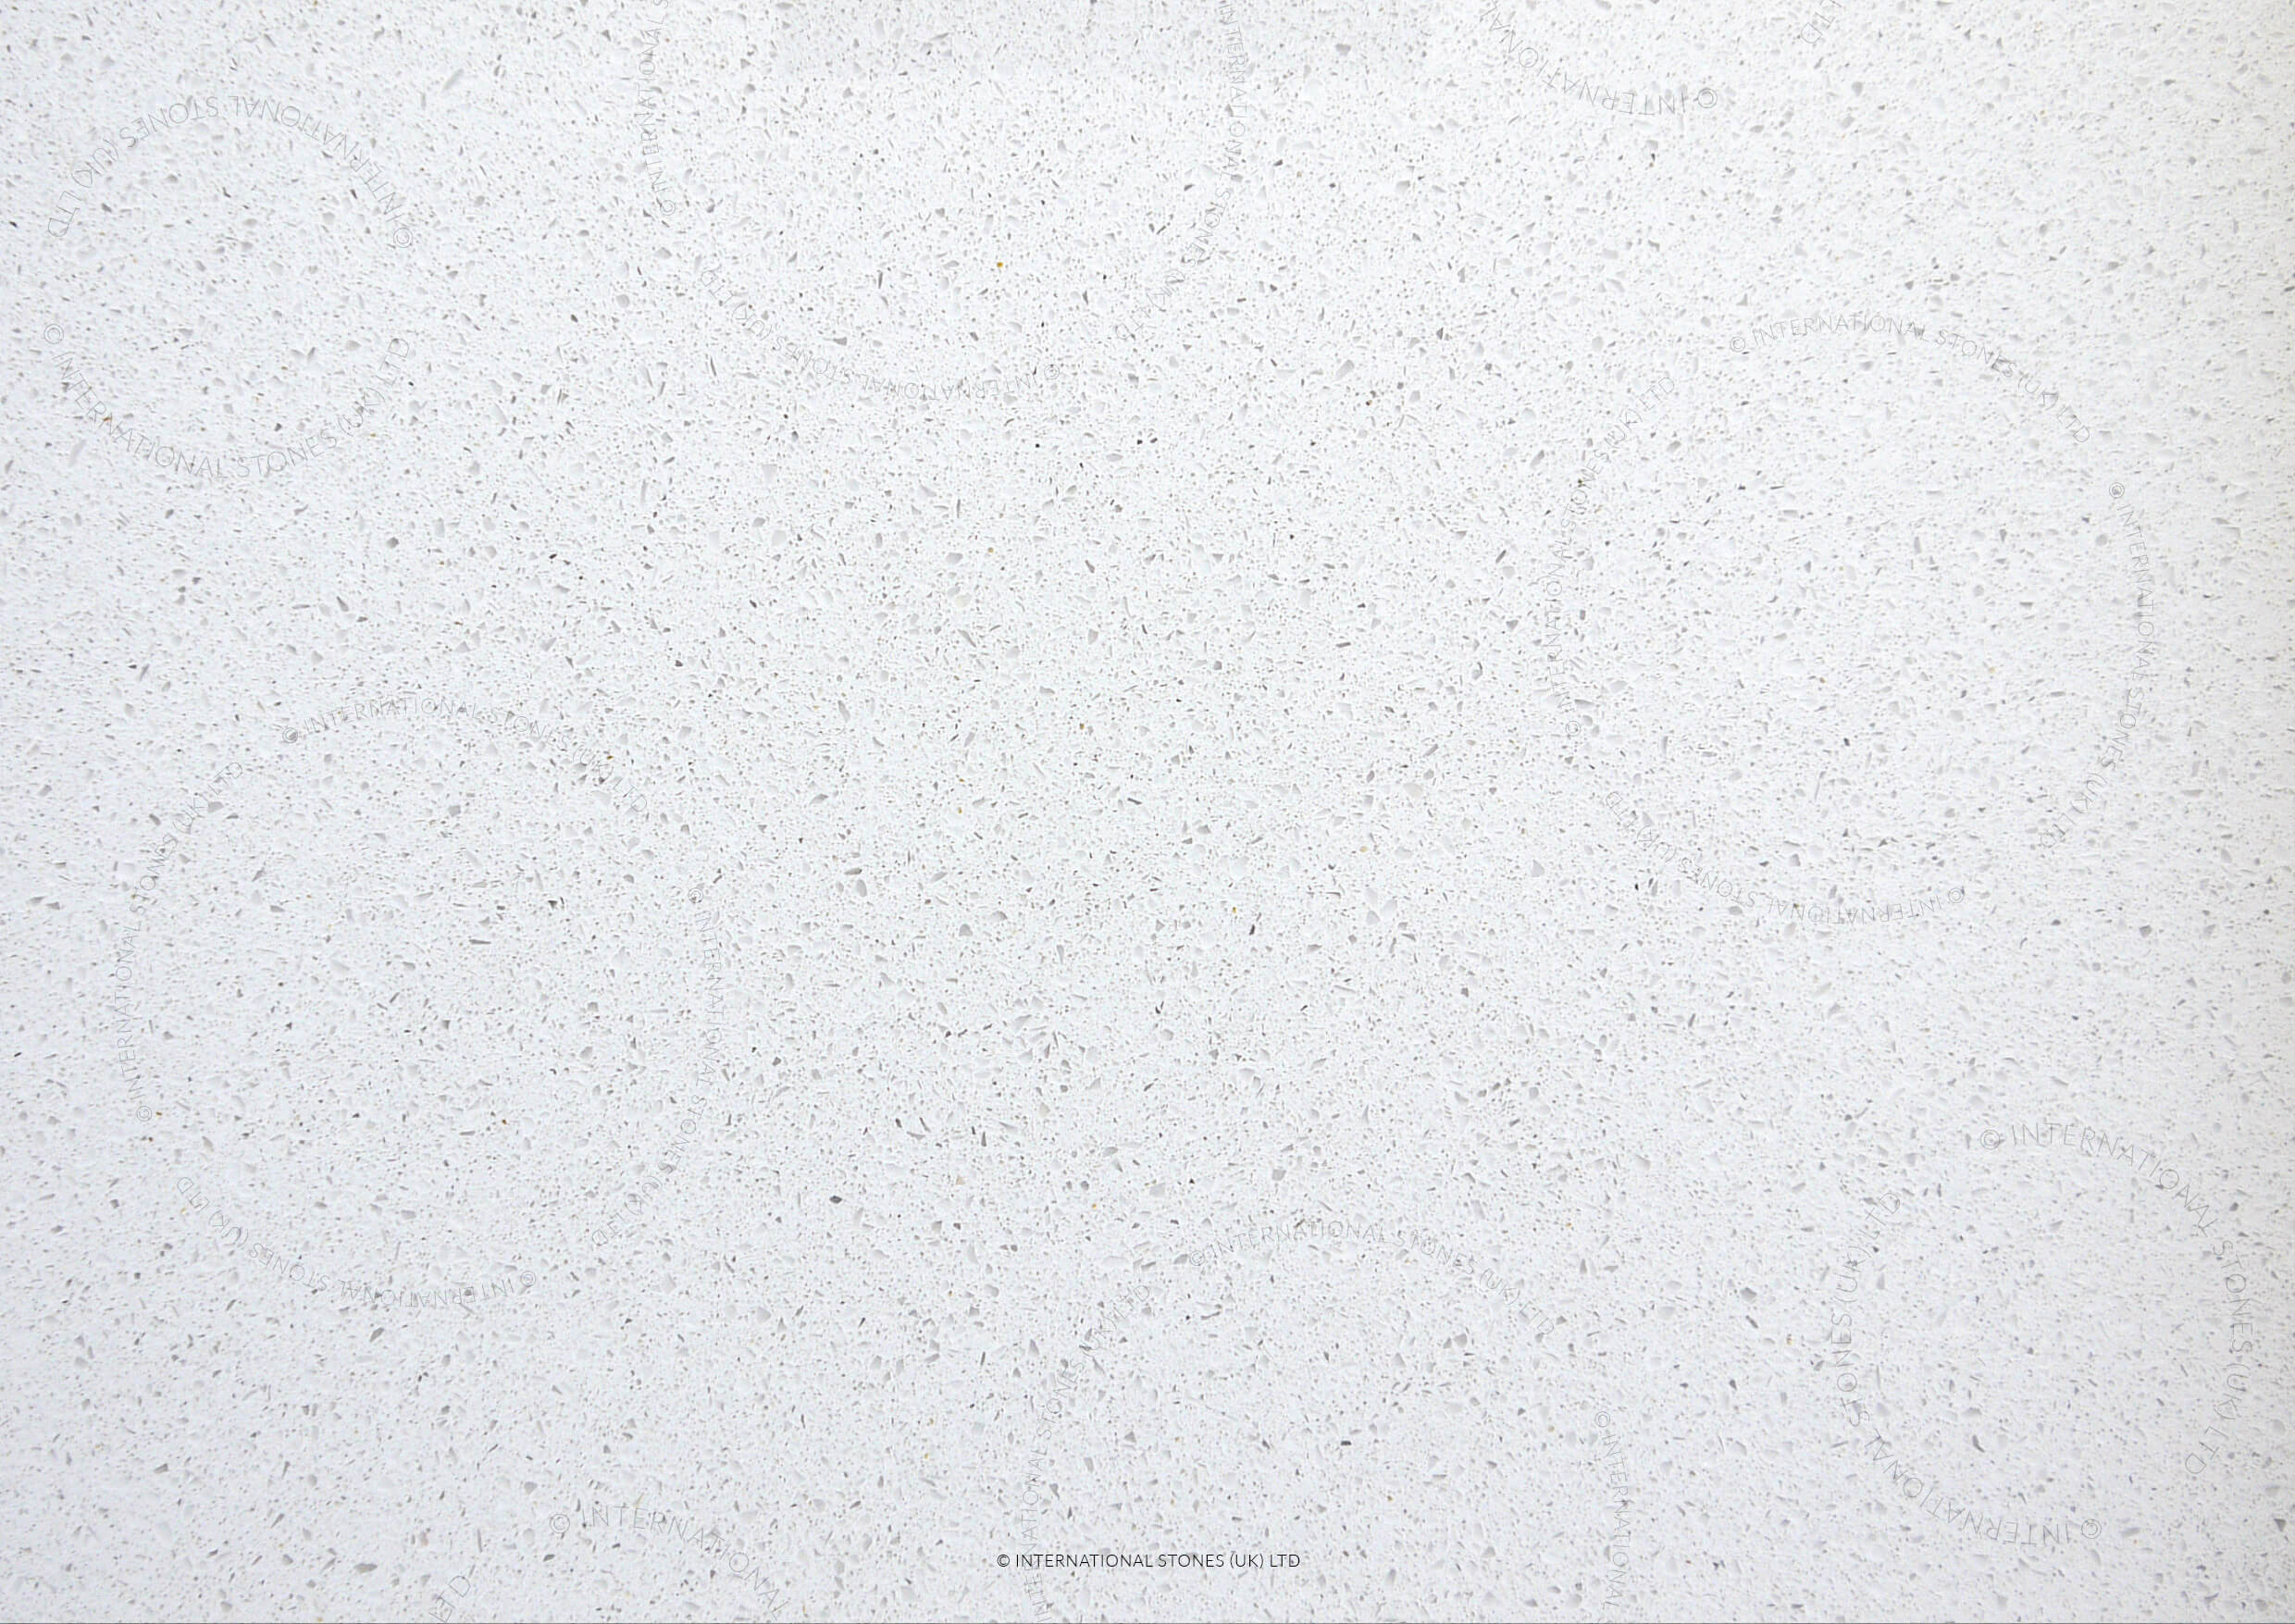 International Stone IQ Blanco Maple - Derby - Loughborough